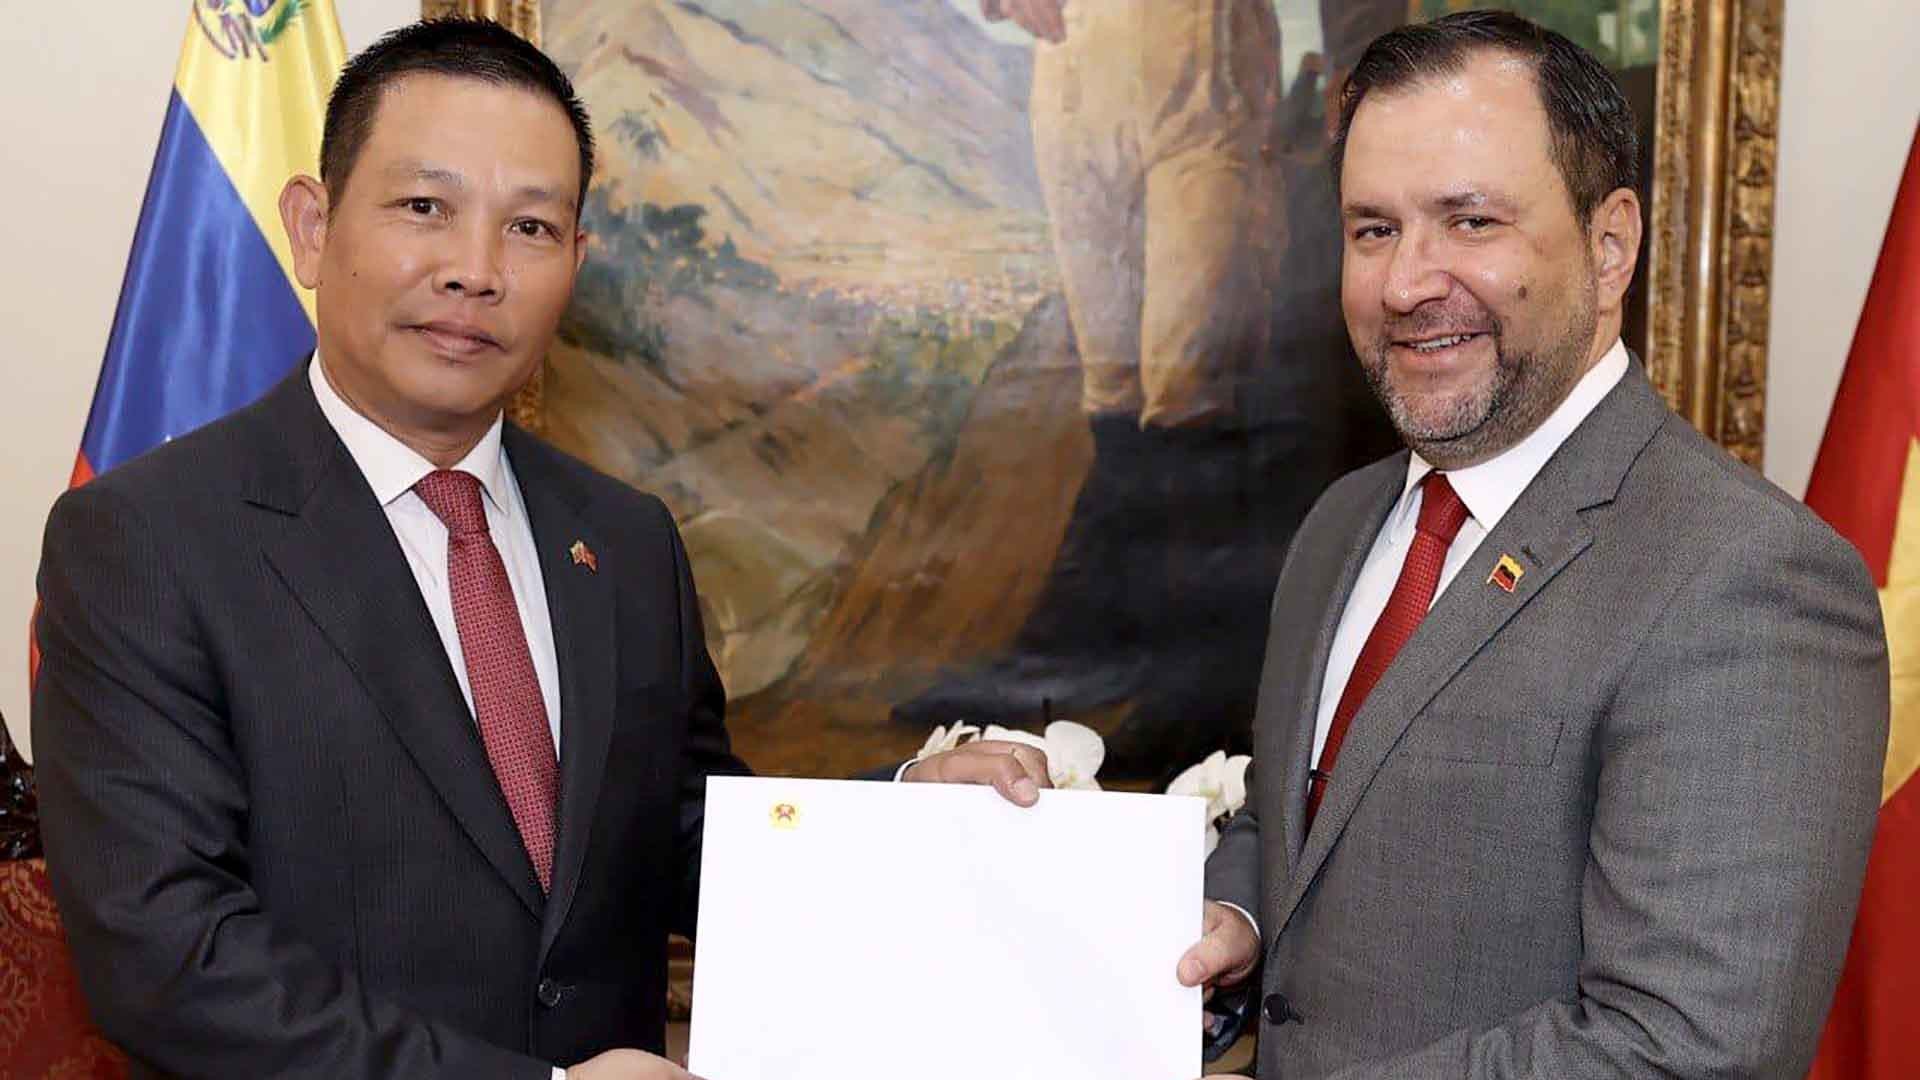 Đại sứ Vũ Trung Mỹ trình bản sao Thư ủy nhiệm lên Bộ trưởng Ngoại giao Venezuela